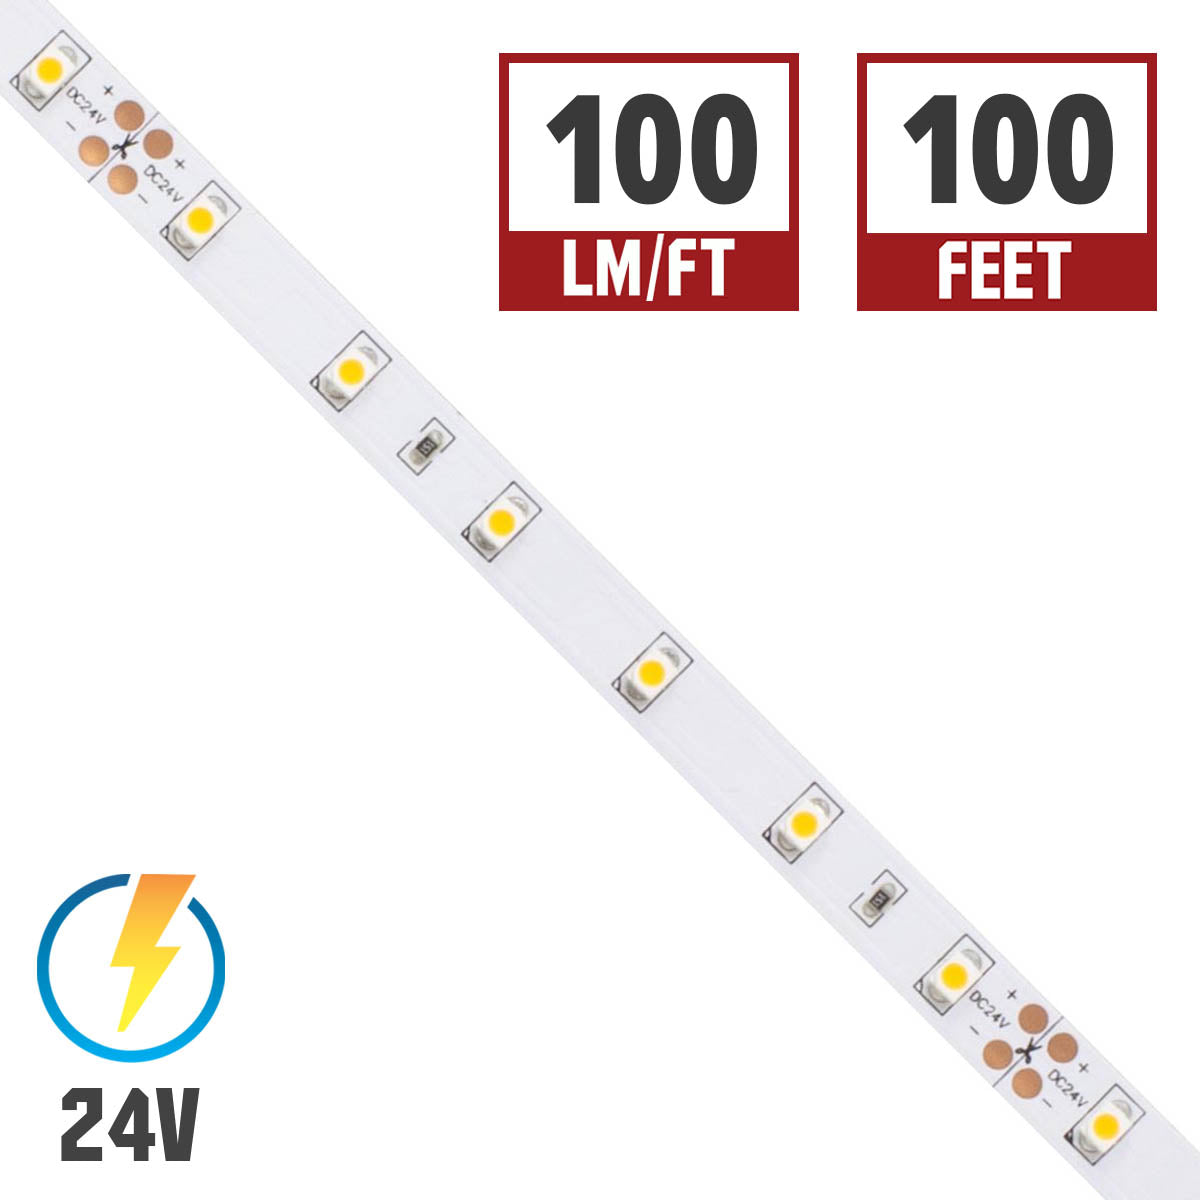 BLAZE LED Strip Light, 100+ Lumens per Ft, 24V